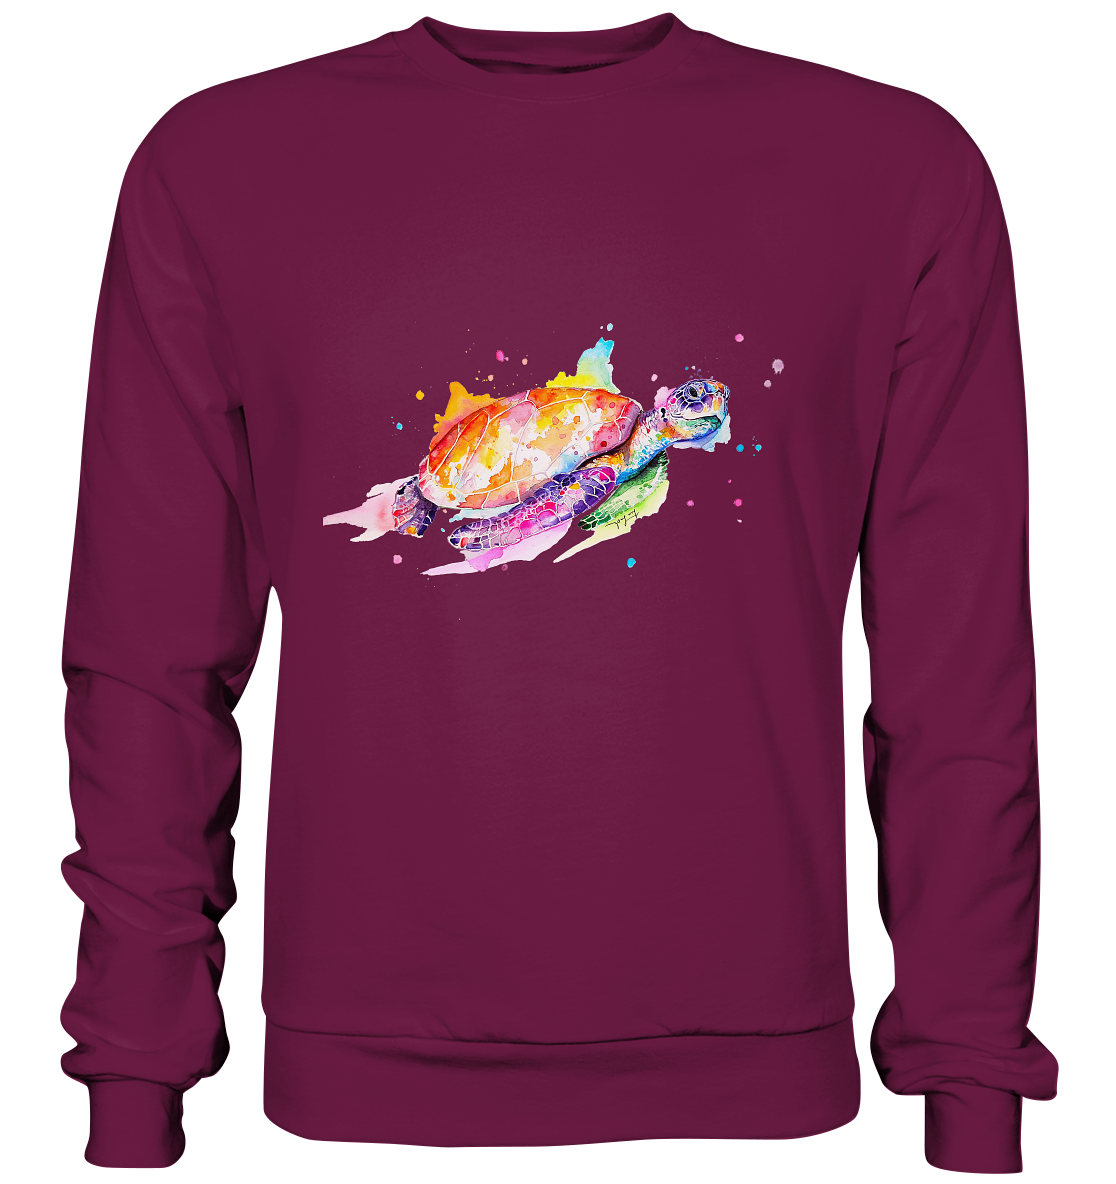 Bunte Meeresschildkröte - Premium Sweatshirt